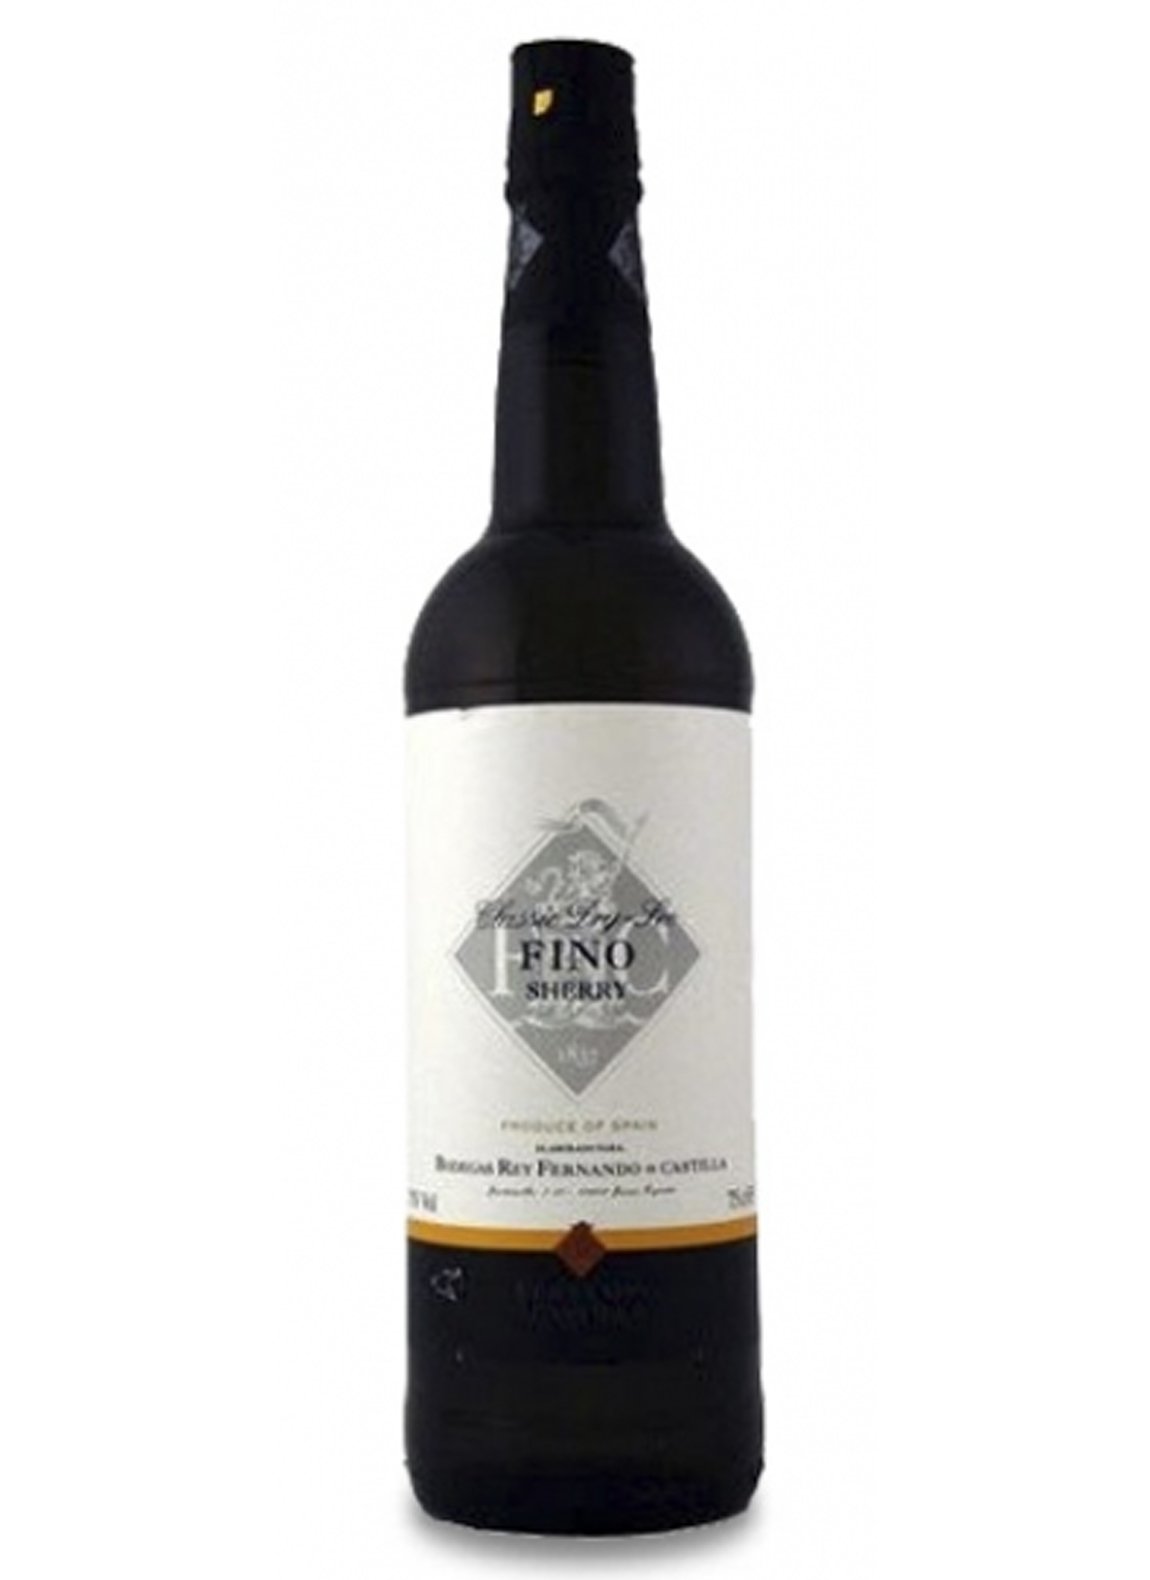 Fernando de Castilla Ant Fino - Wine Spain Sherry - Liquor Wine Cave